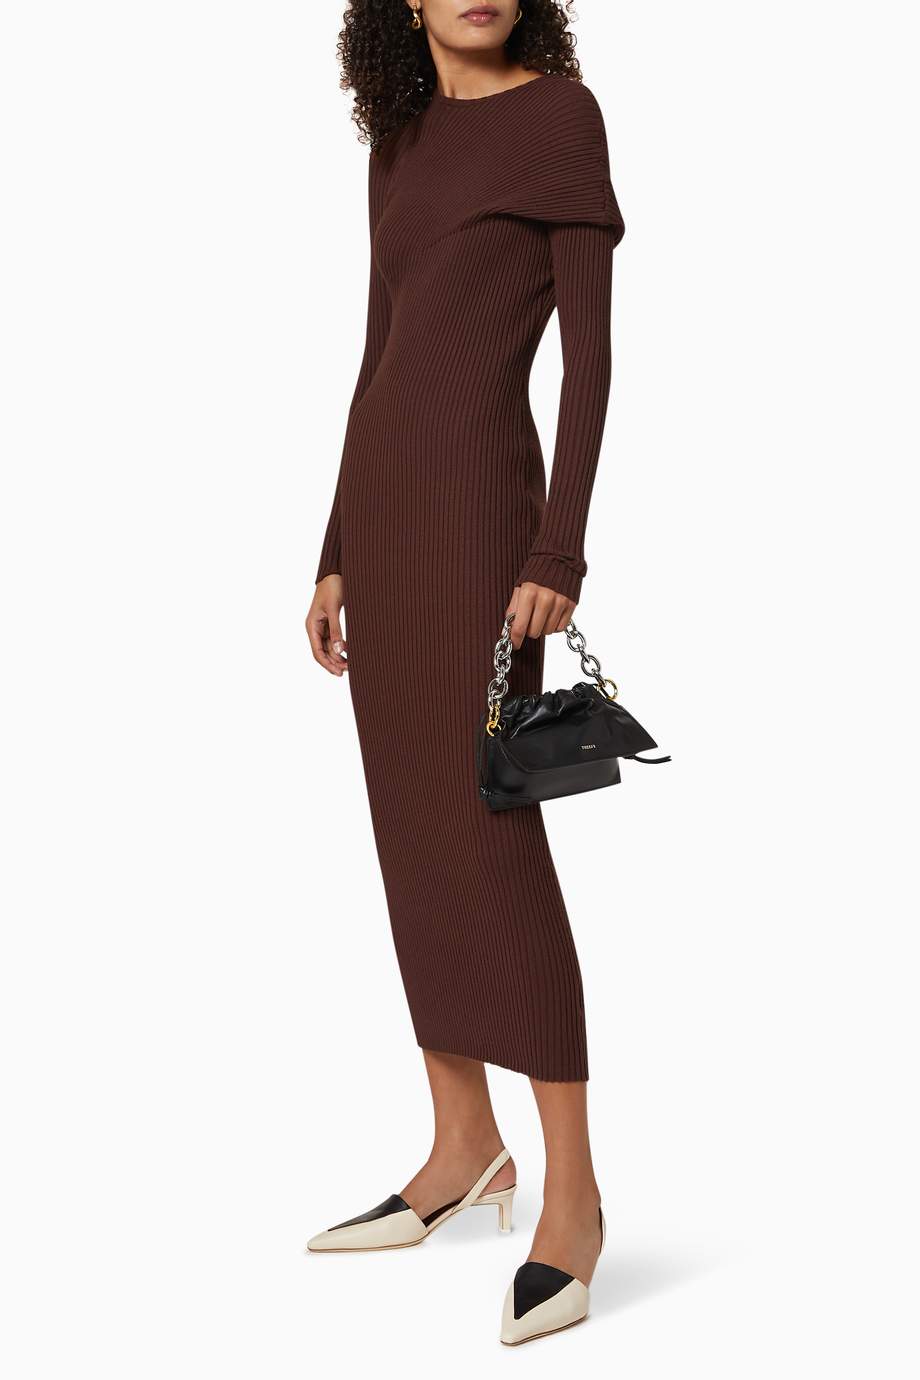 Shop Wynn Hamlyn Brown Fold Ribbed Knit Dress for Women | Ounass UAE